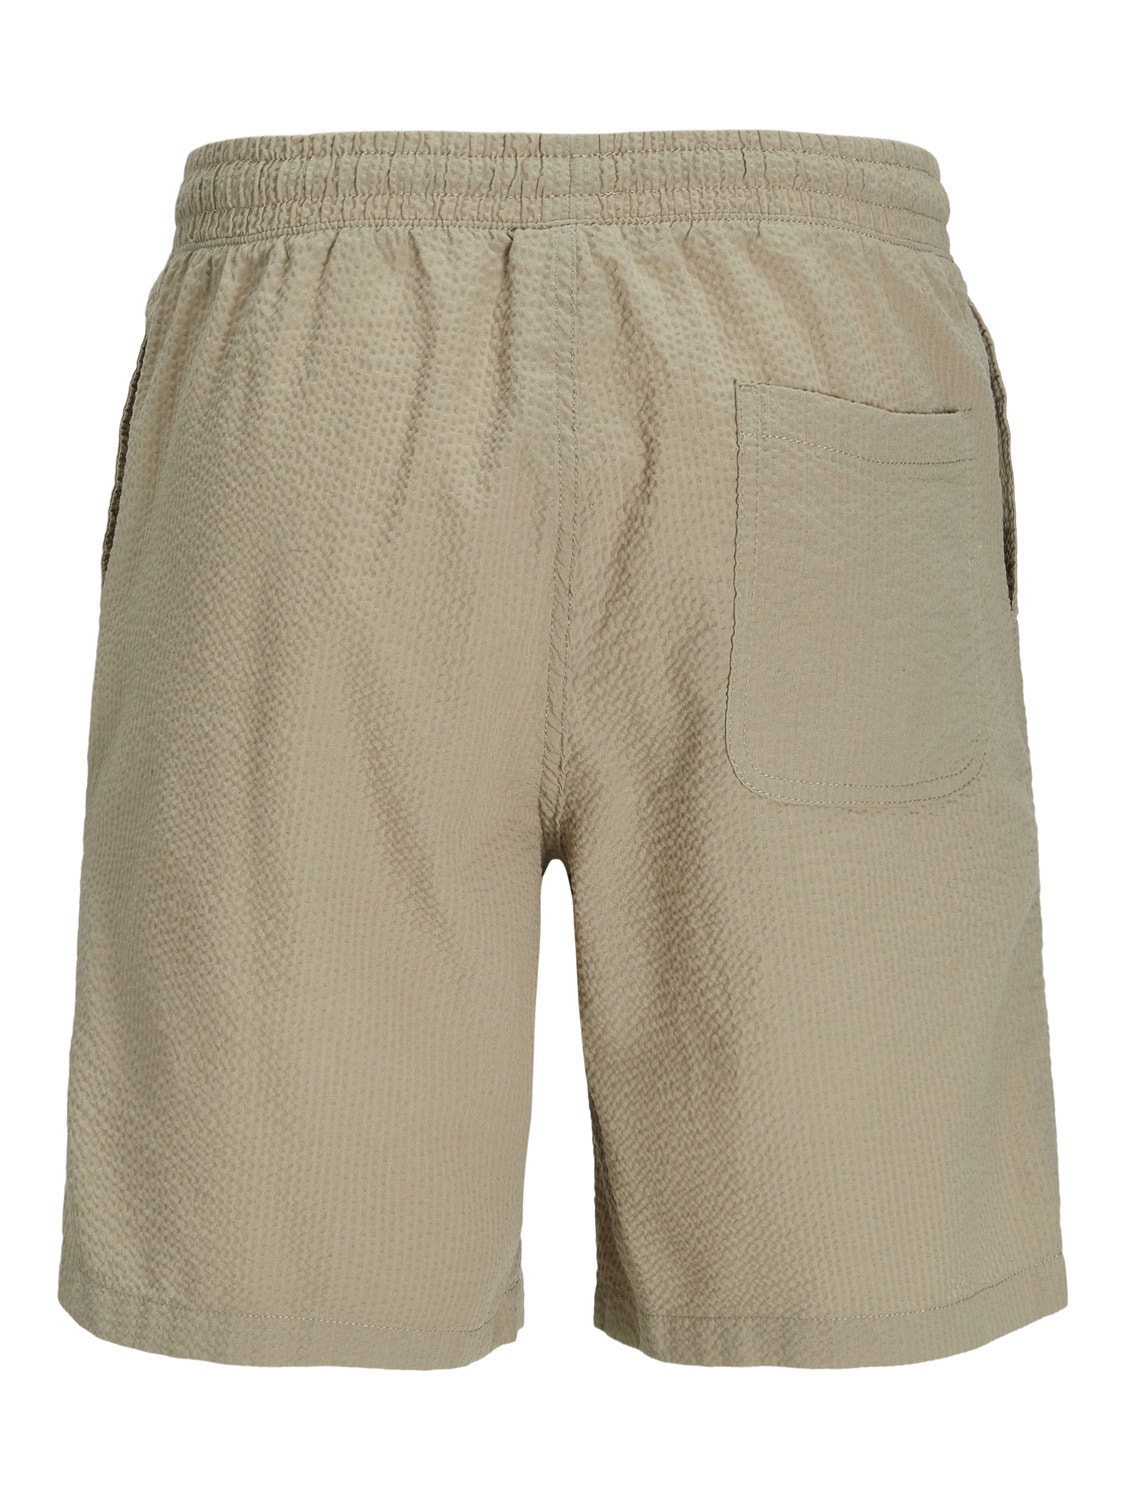 Jack & Jones Jogger Fit Shorts -Crockery - 12253151